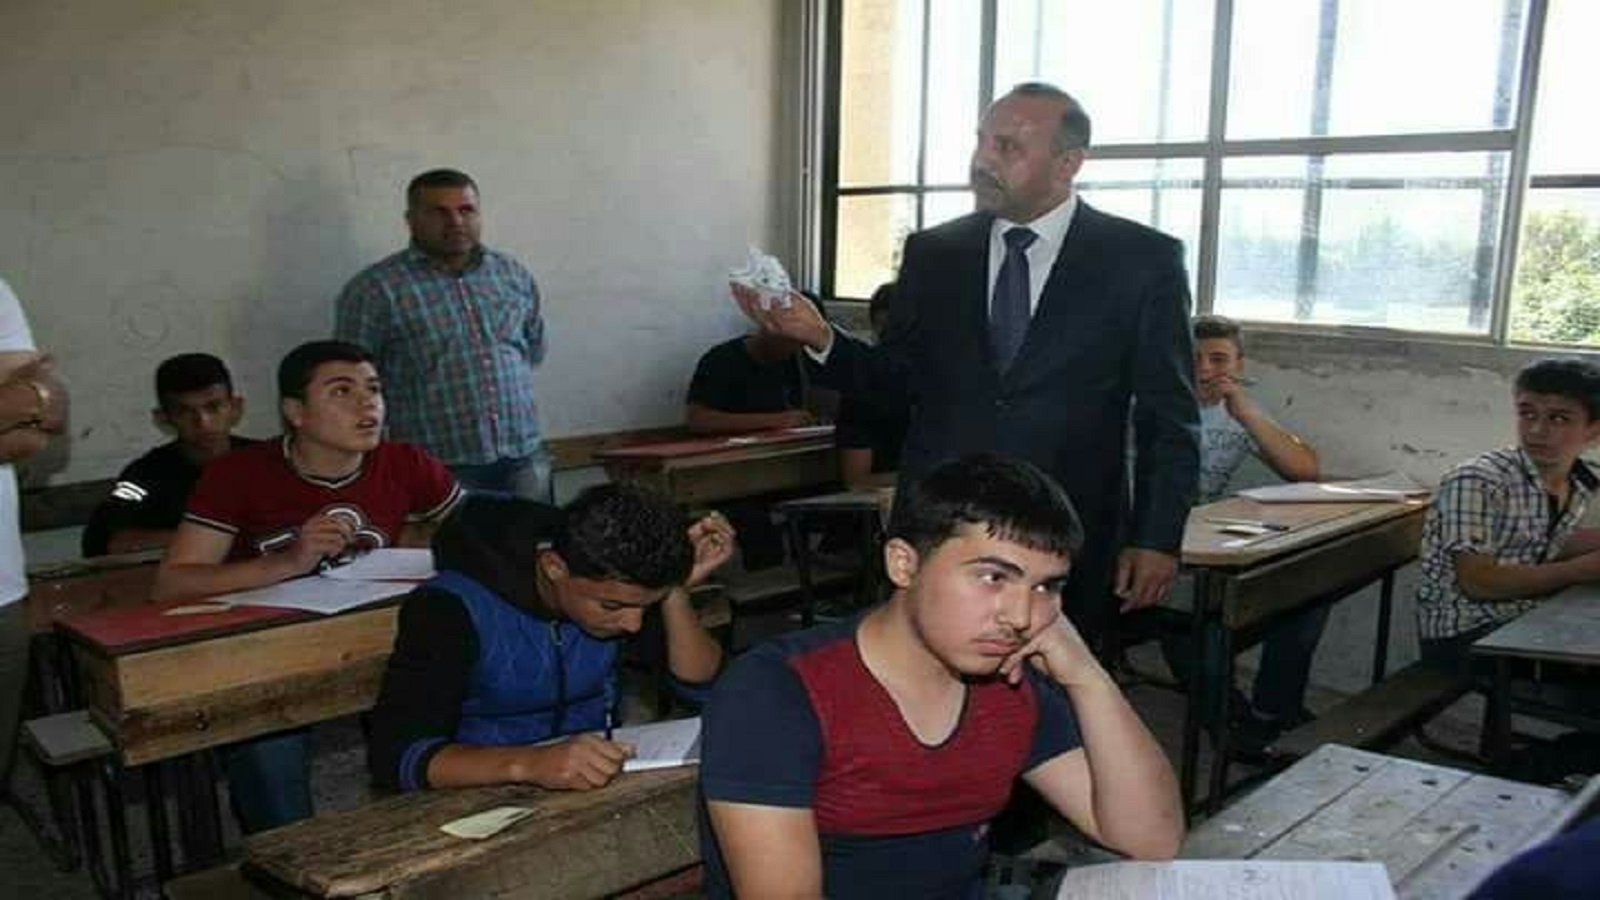 بأوامر من مُحافظ حماة: الطلاب الغشاشون.. يُعتقلون!